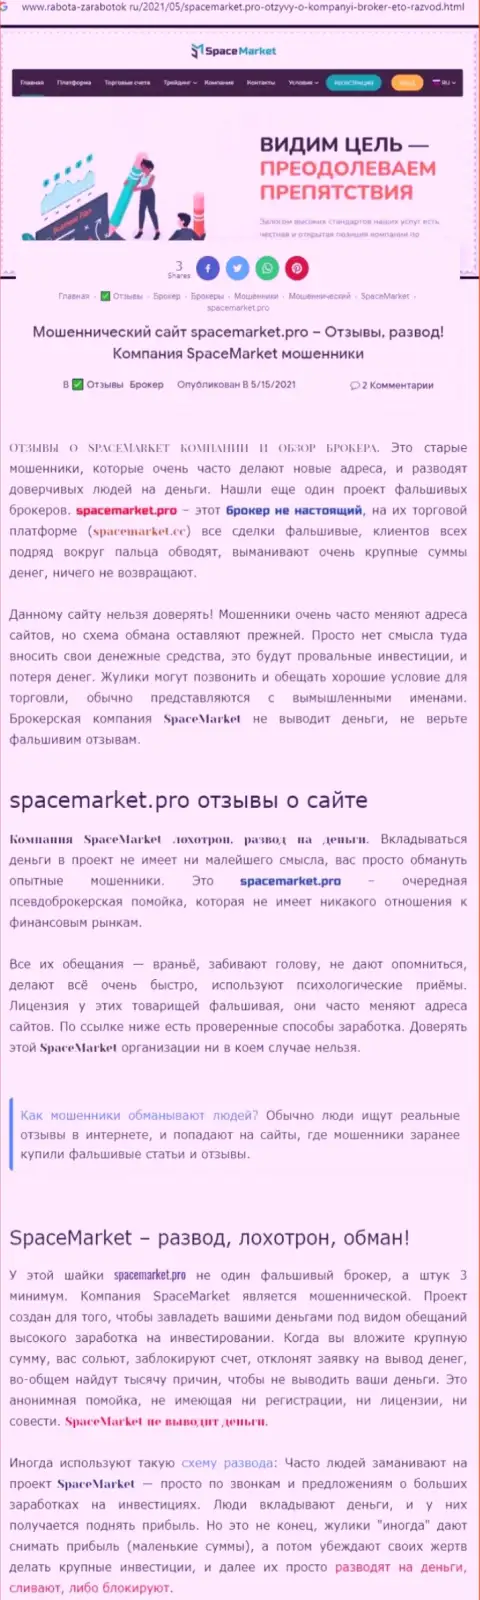 Space Market - это бессовестный обман своих клиентов (обзор противоправных деяний)